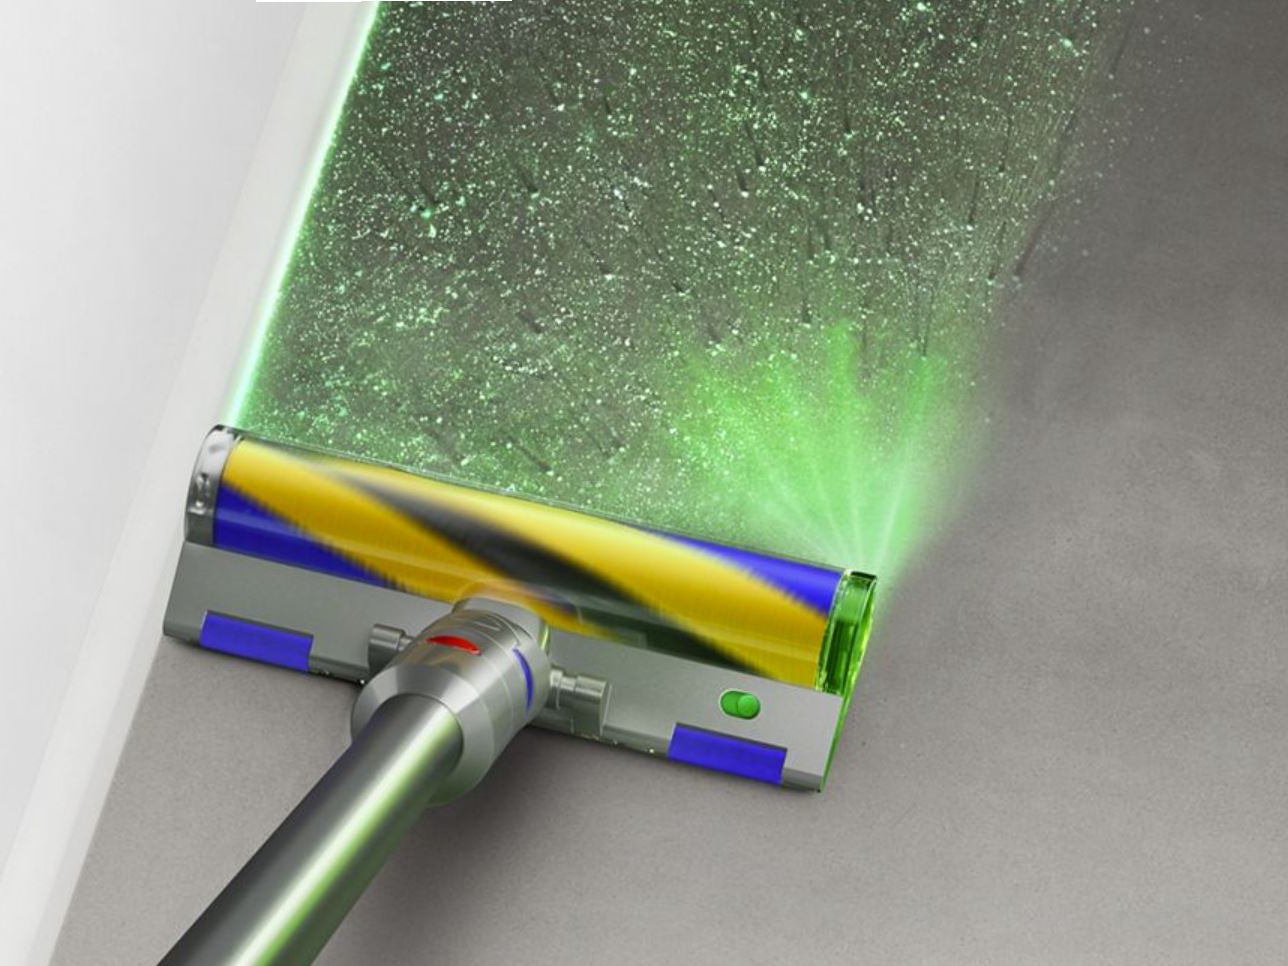 #Akkusauger mit futuristischer Laser-Stauberkennung: Den Dyson V12 gibt’s heute zum Spitzenpreis